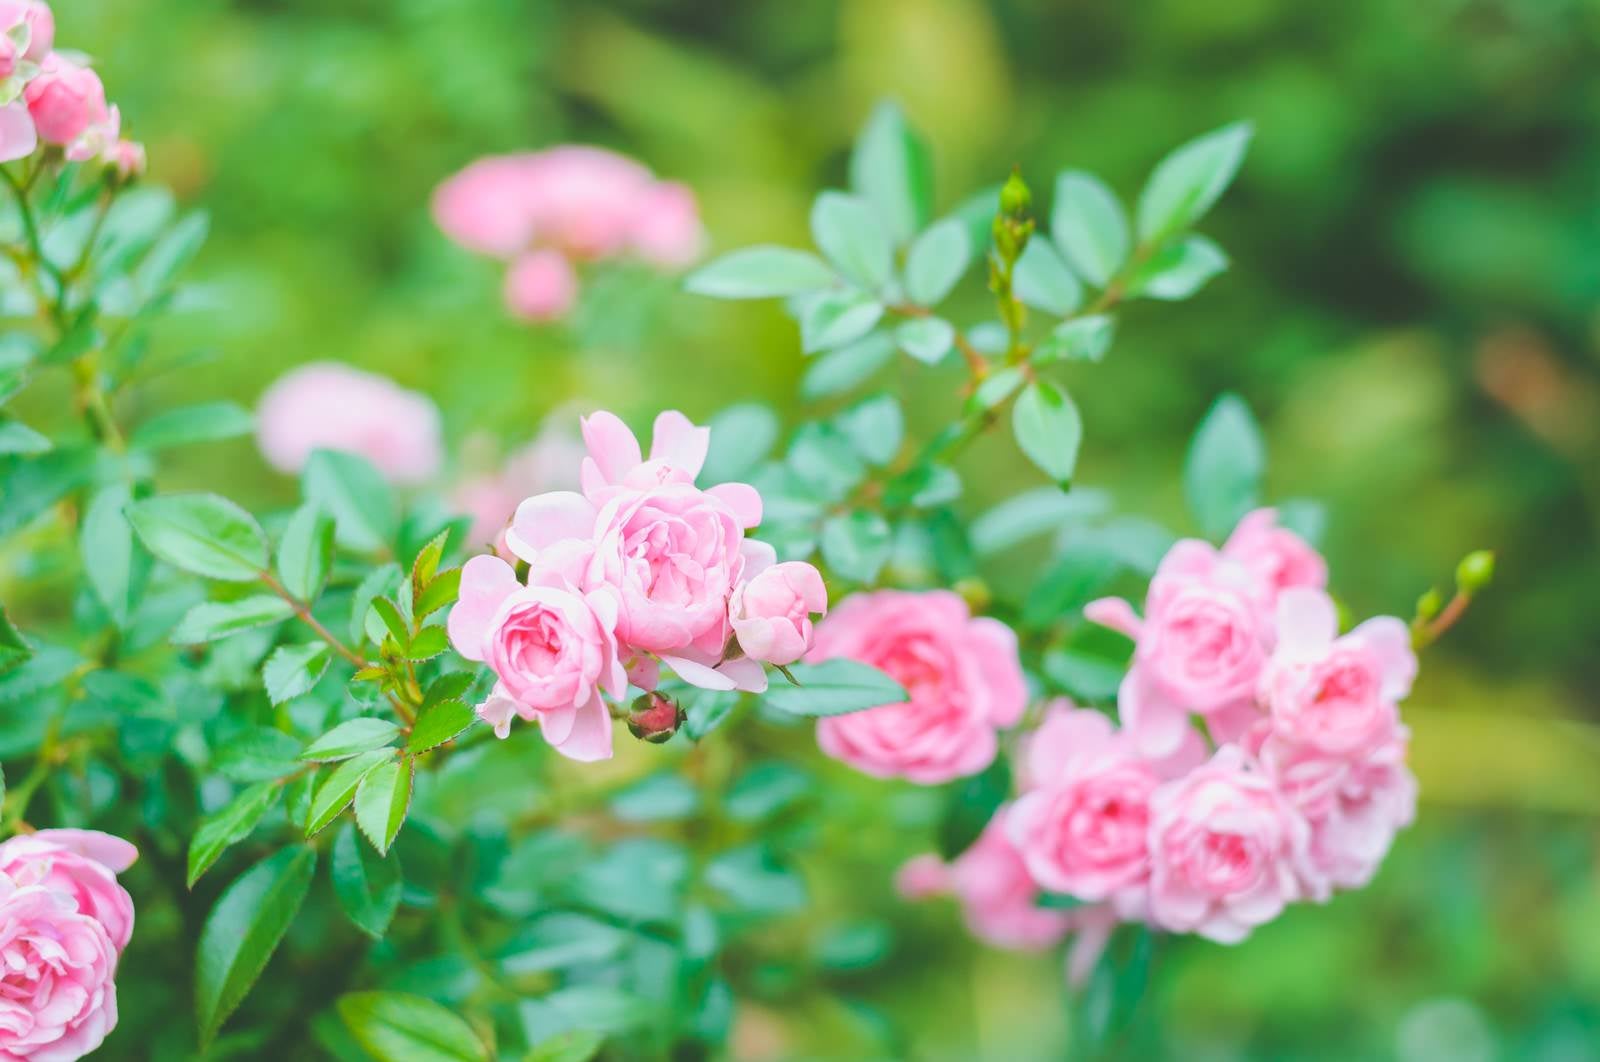 「鮮やかに咲くピンクのミニバラ」の写真